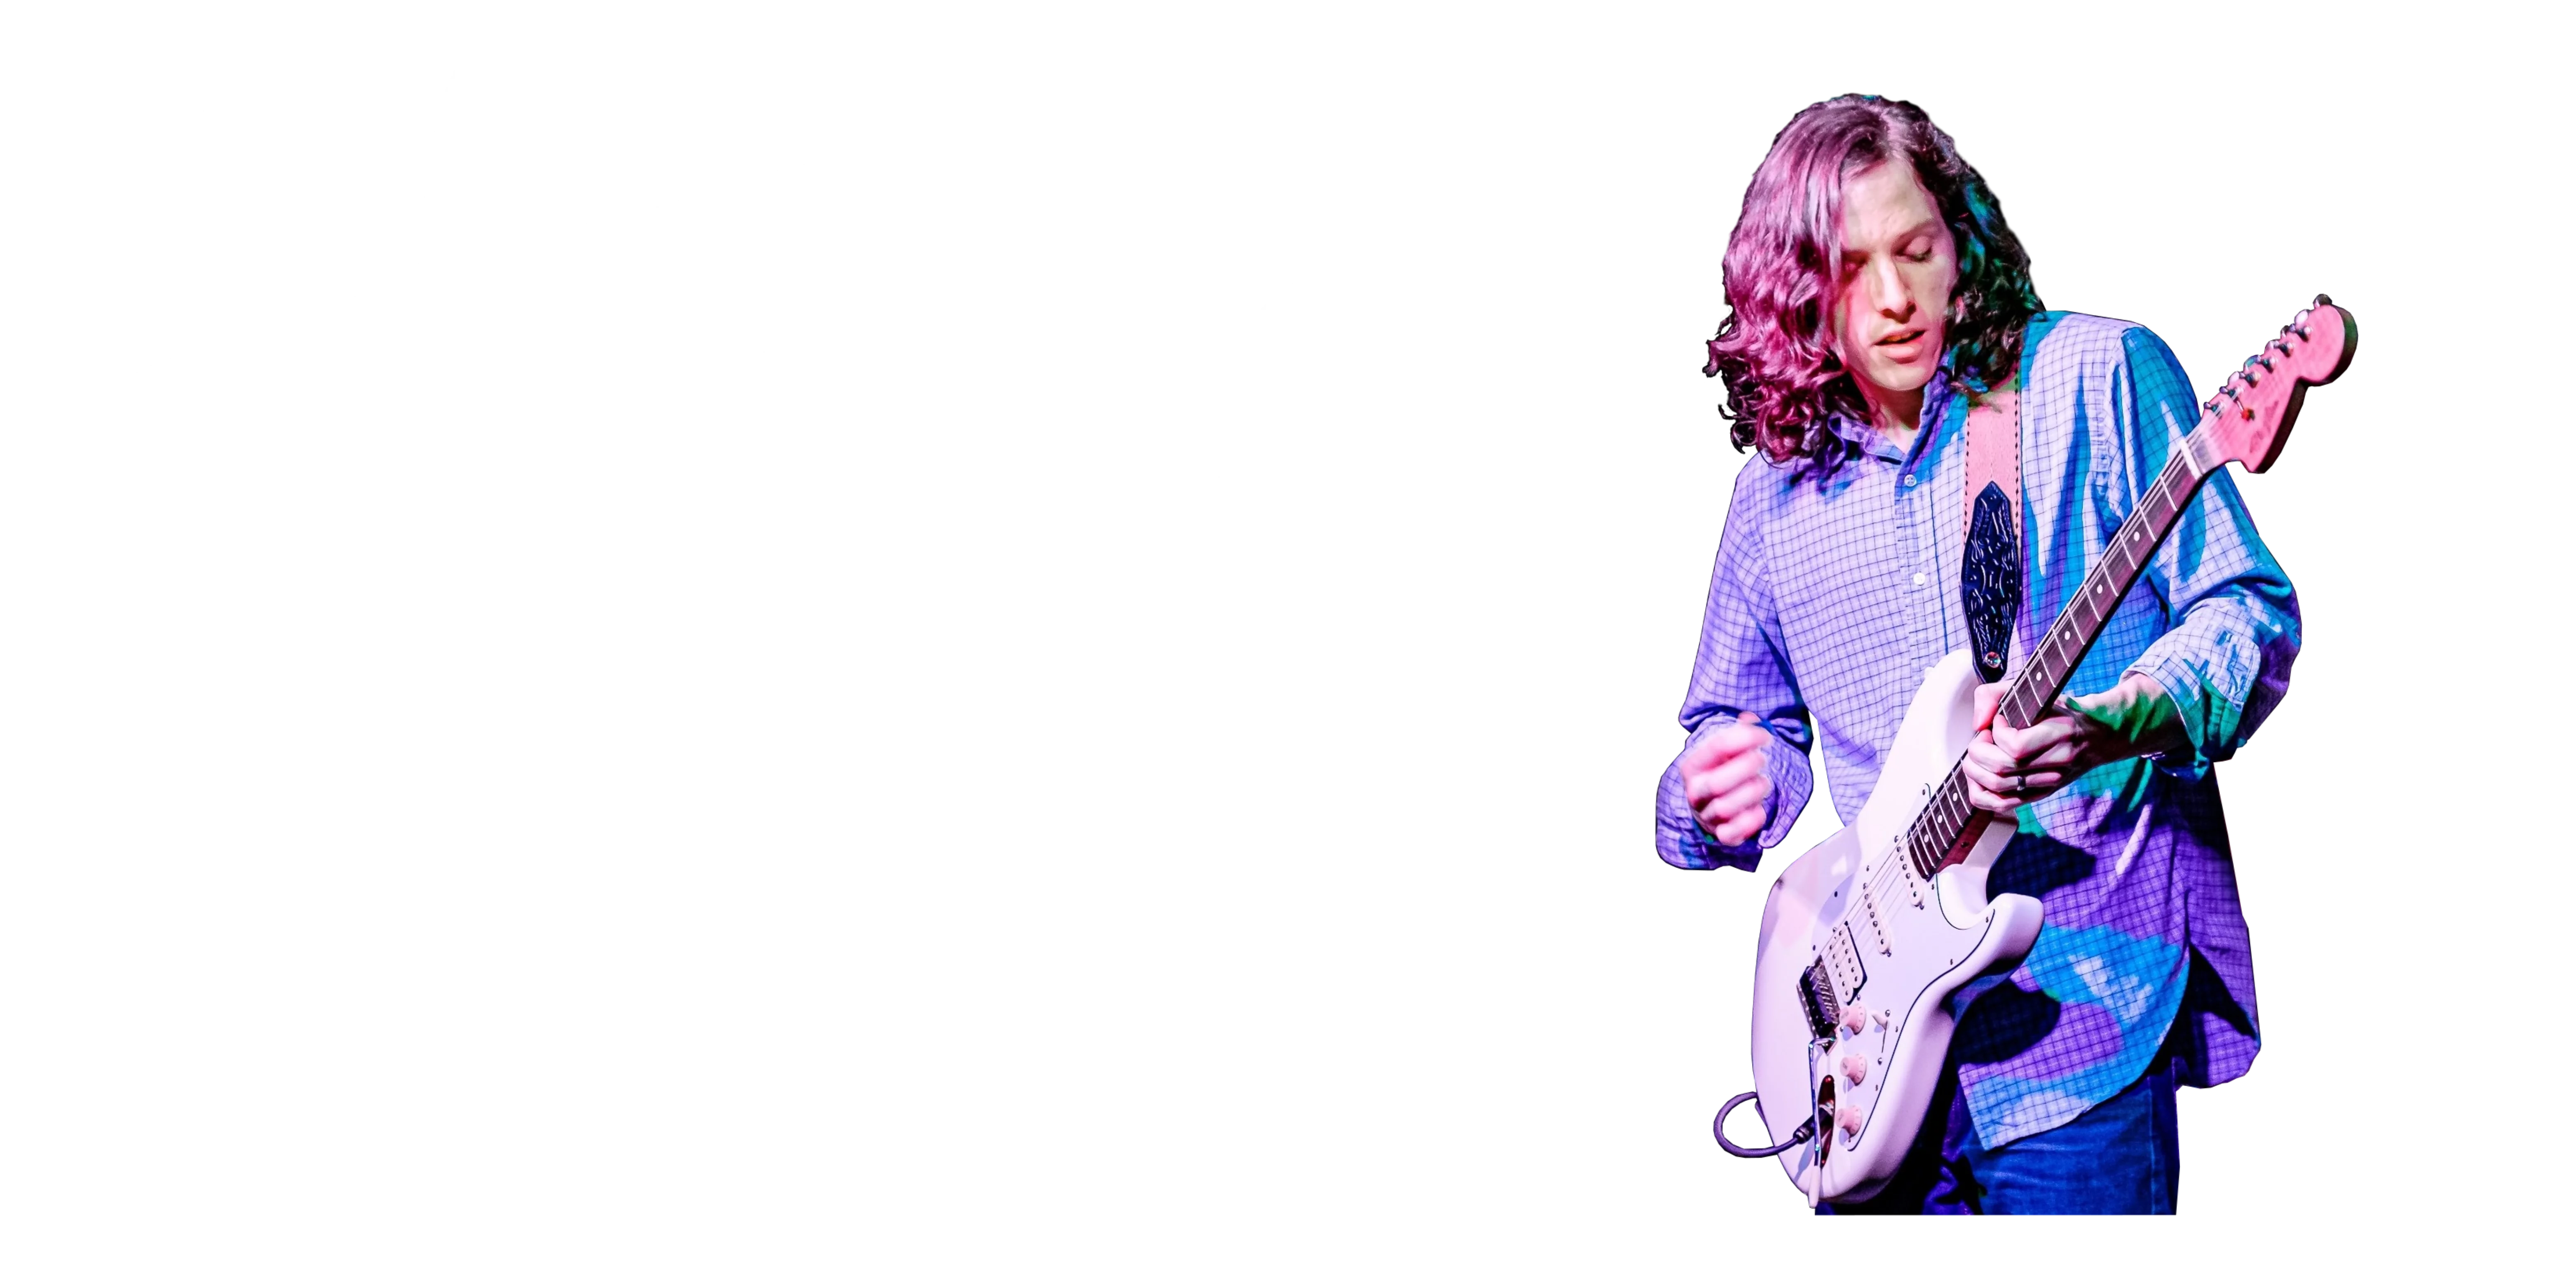 Hughes Taylor- Modern Nostalgia Pre Order